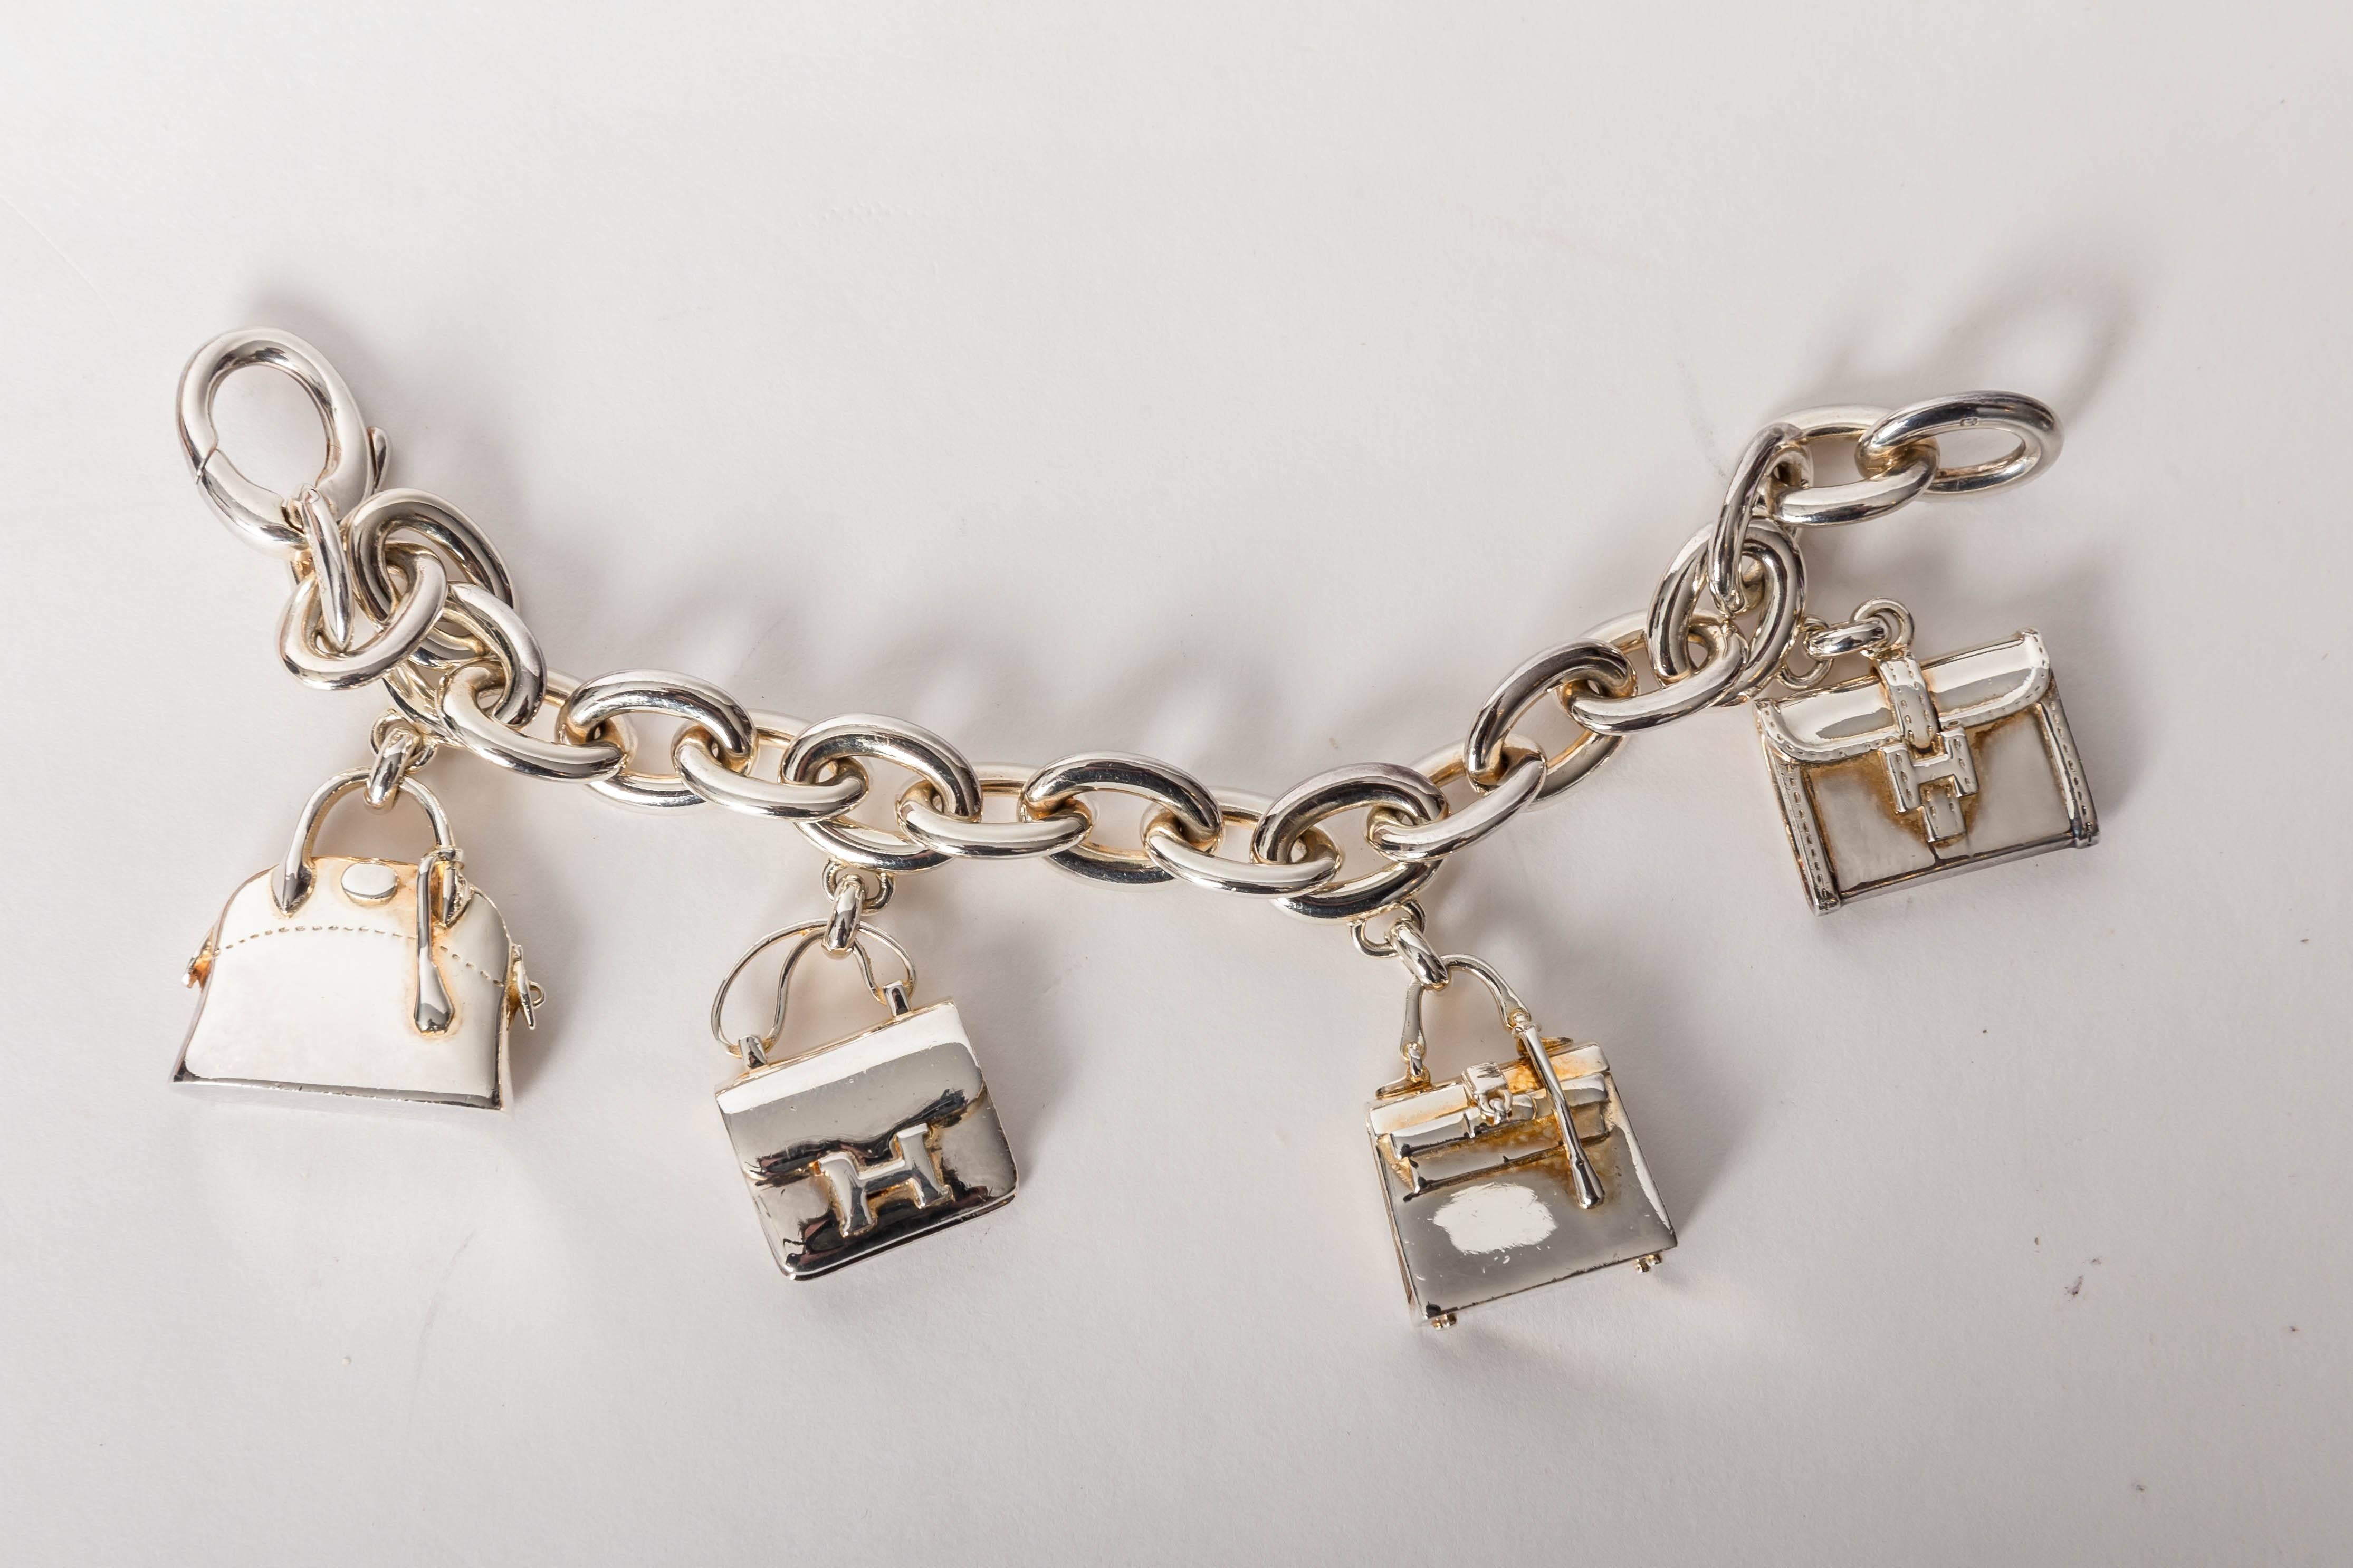 Women's Hermes Birkin Charm Bracelet in Sterling Silver and Gold